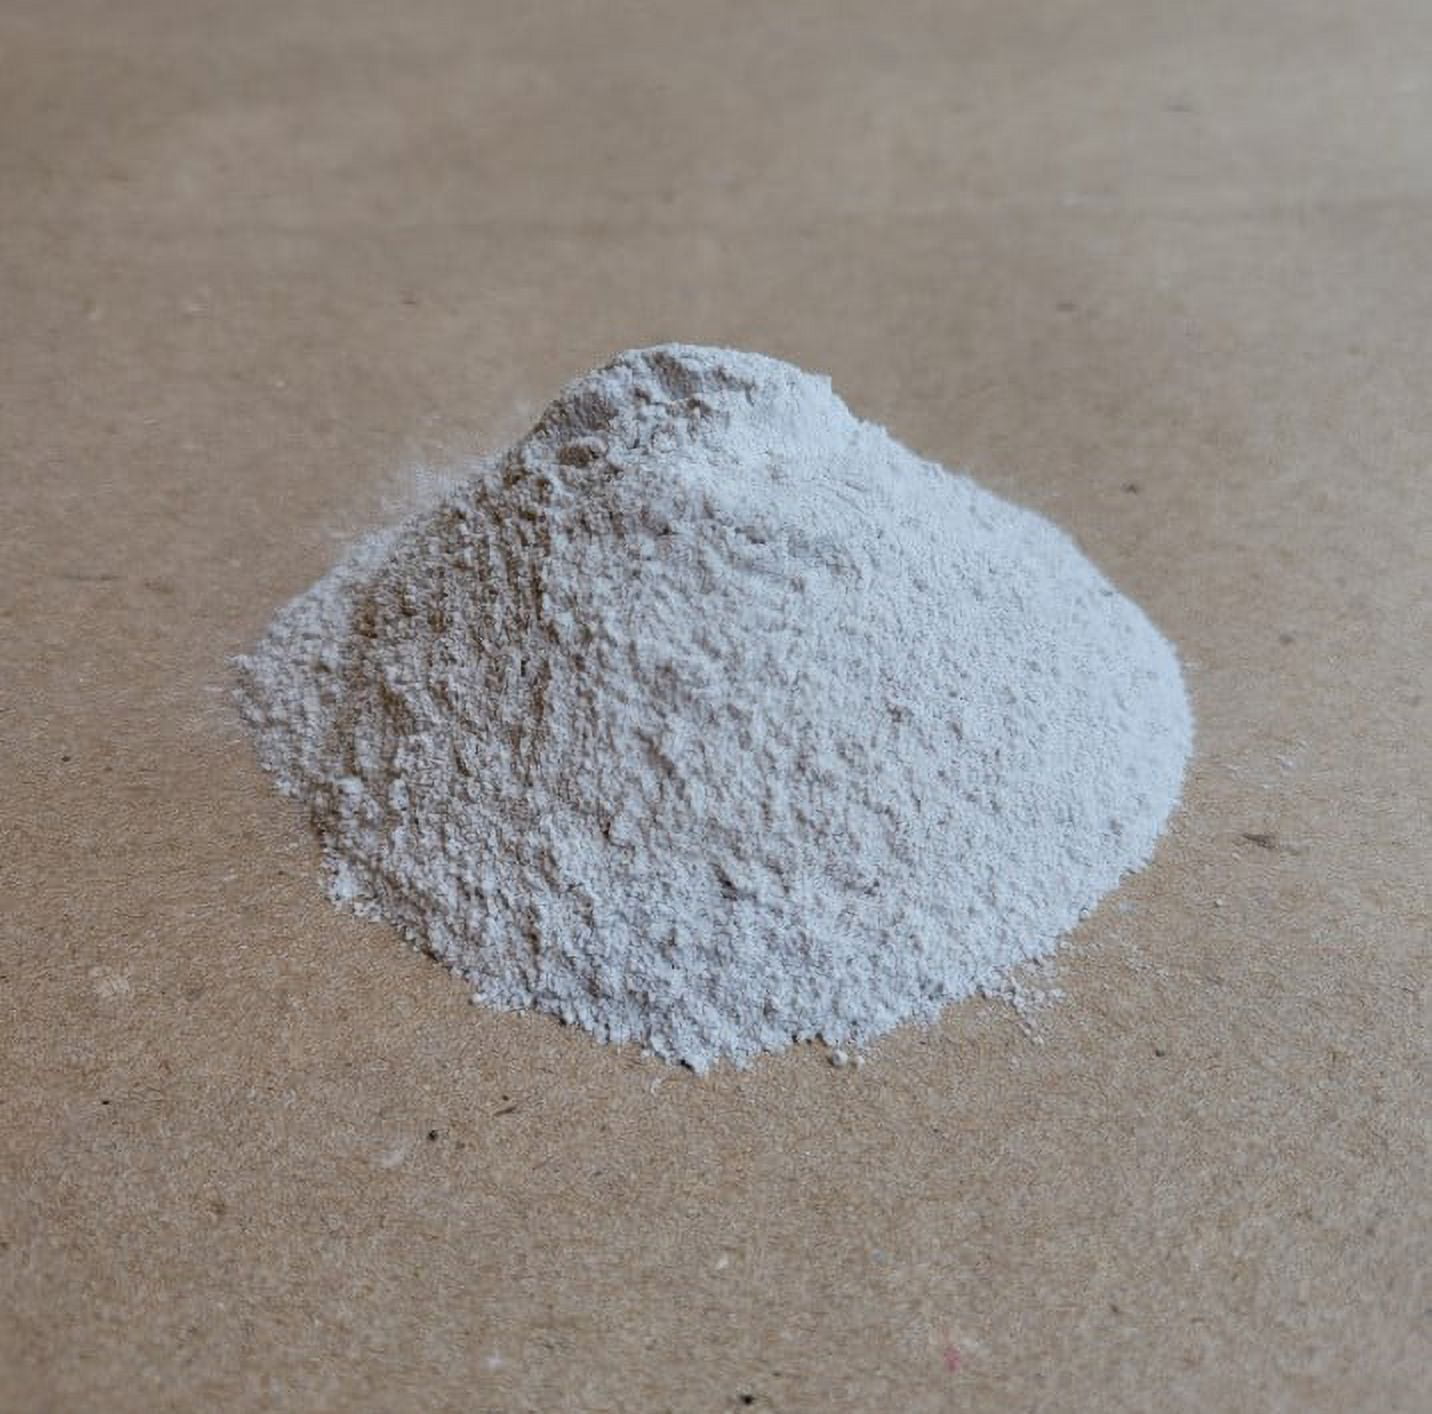 Calcium Carbonate, Fine ground limestone, FCC